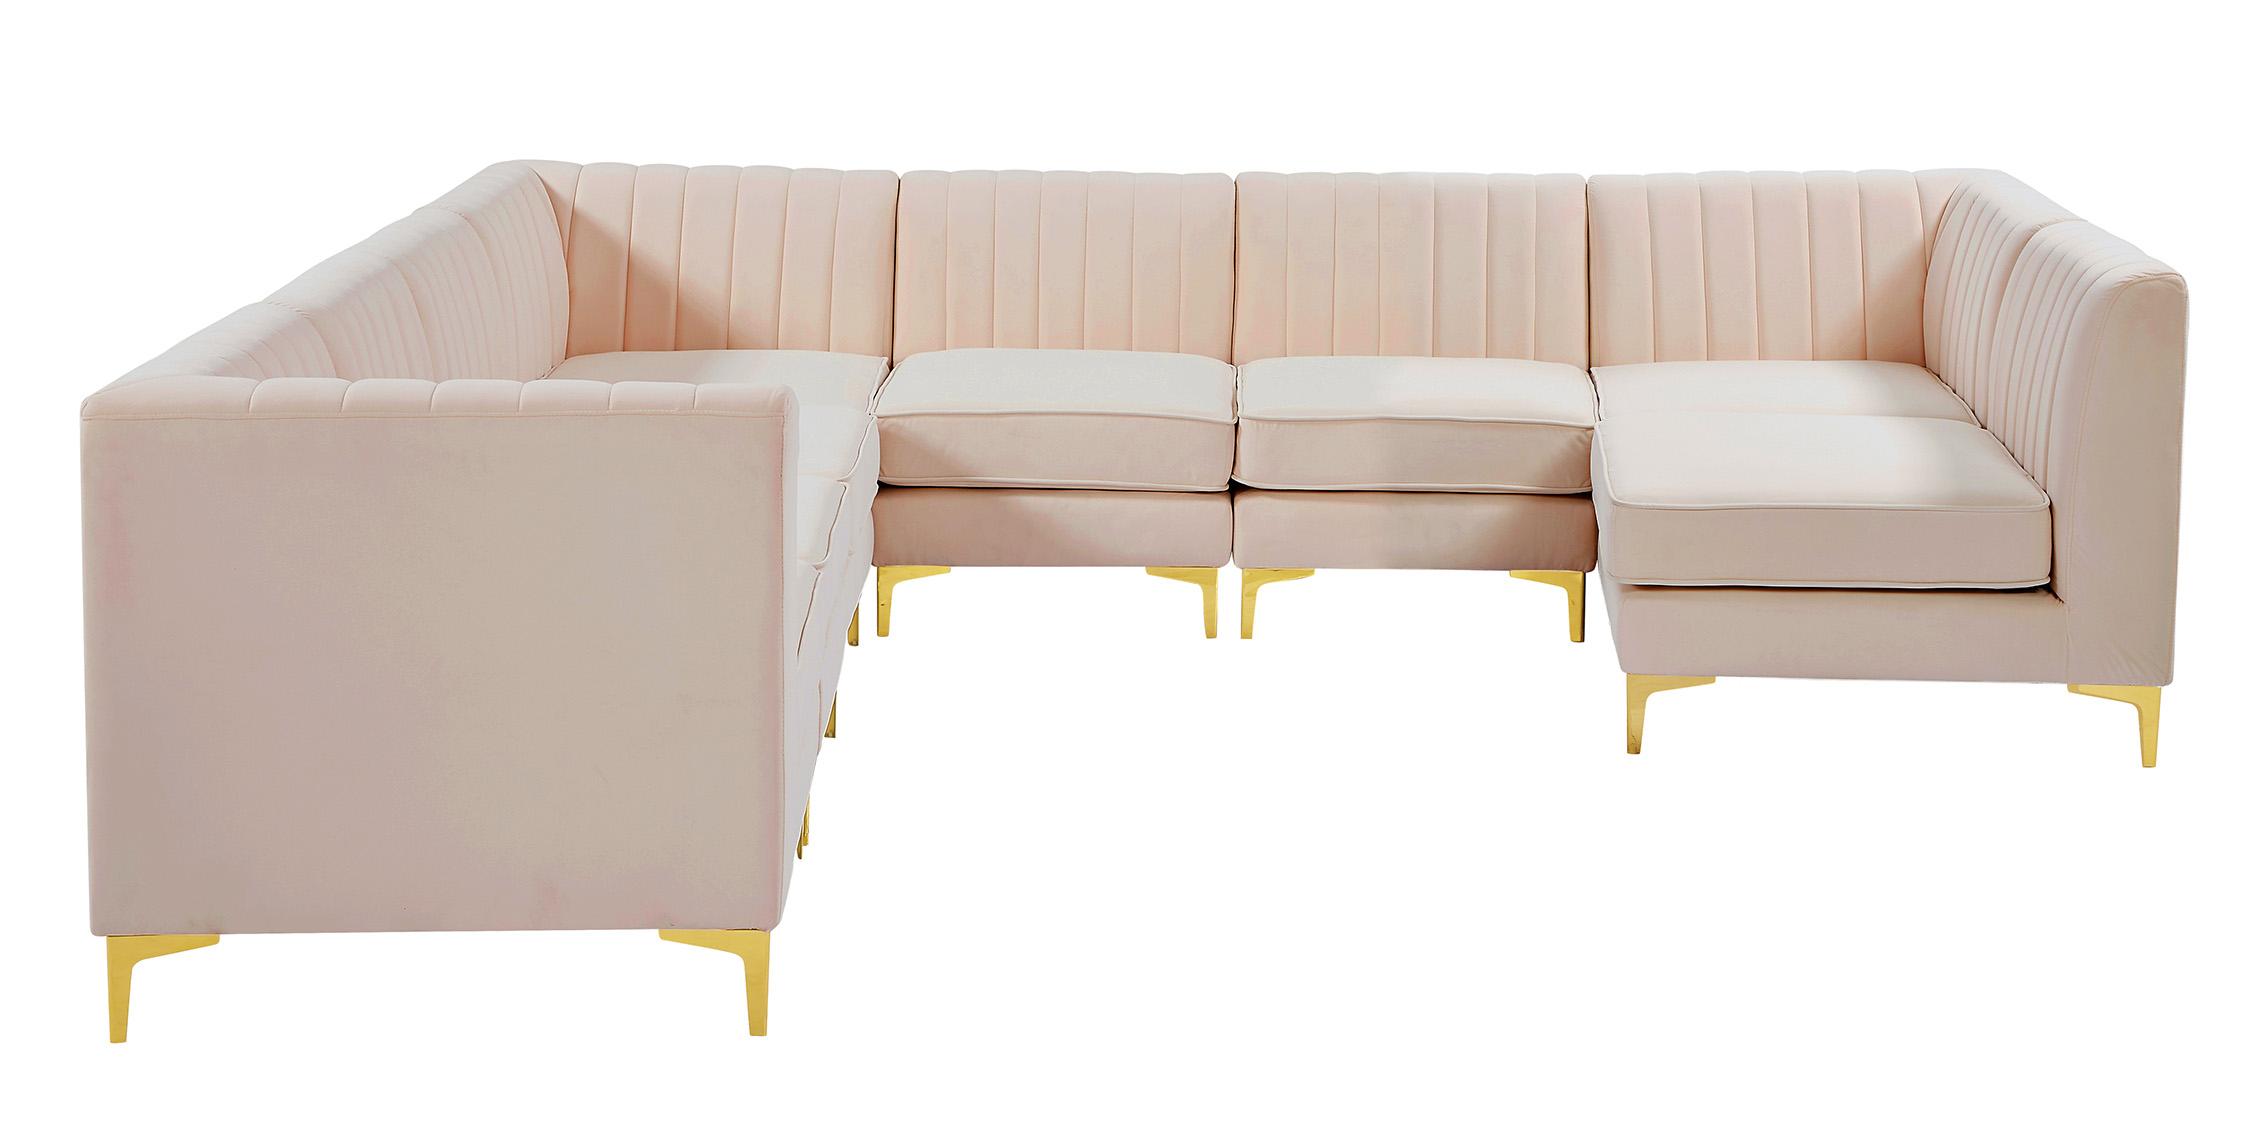 

    
Meridian Furniture ALINA 604Pink-Sec8A Modular Sectional Sofa Pink 604Pink-Sec8A
